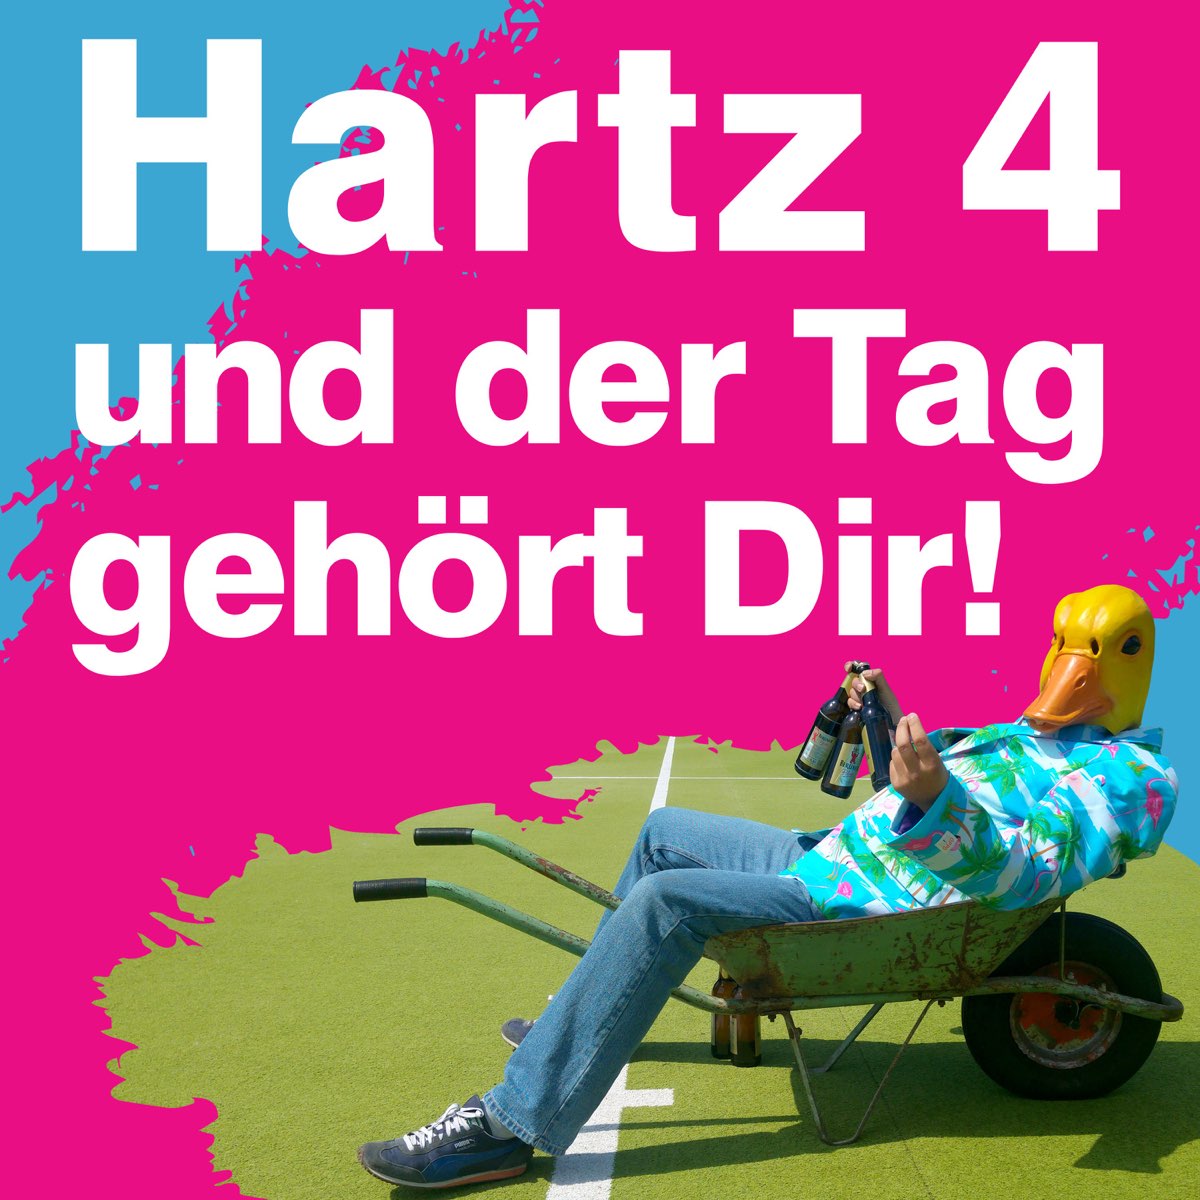 Hartz 4 und der Tag gehört dir - Single de Ingo ohne Flamingo